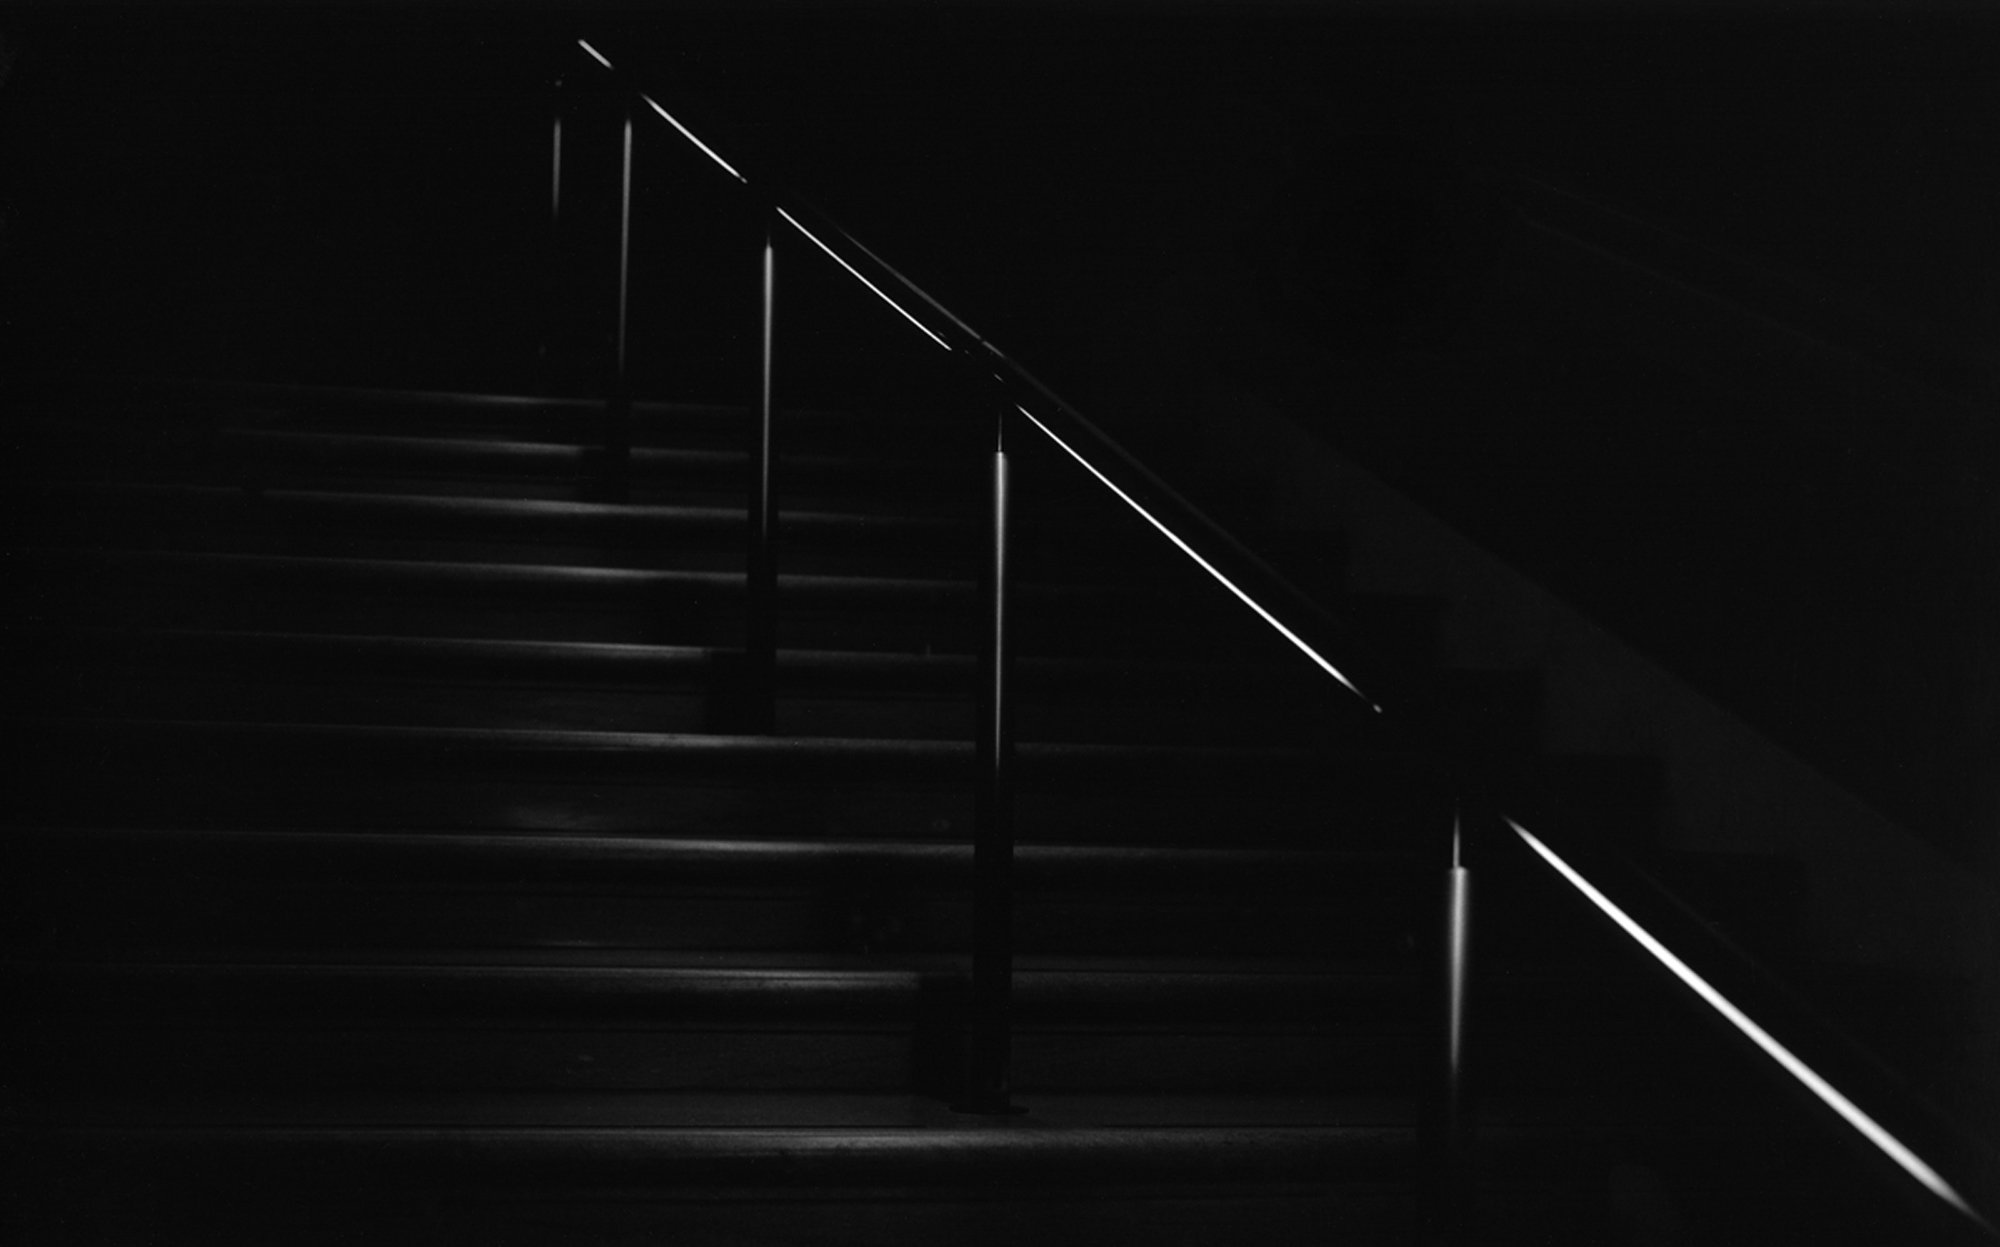    Met Stairs    by Arnie Kastenbaum 